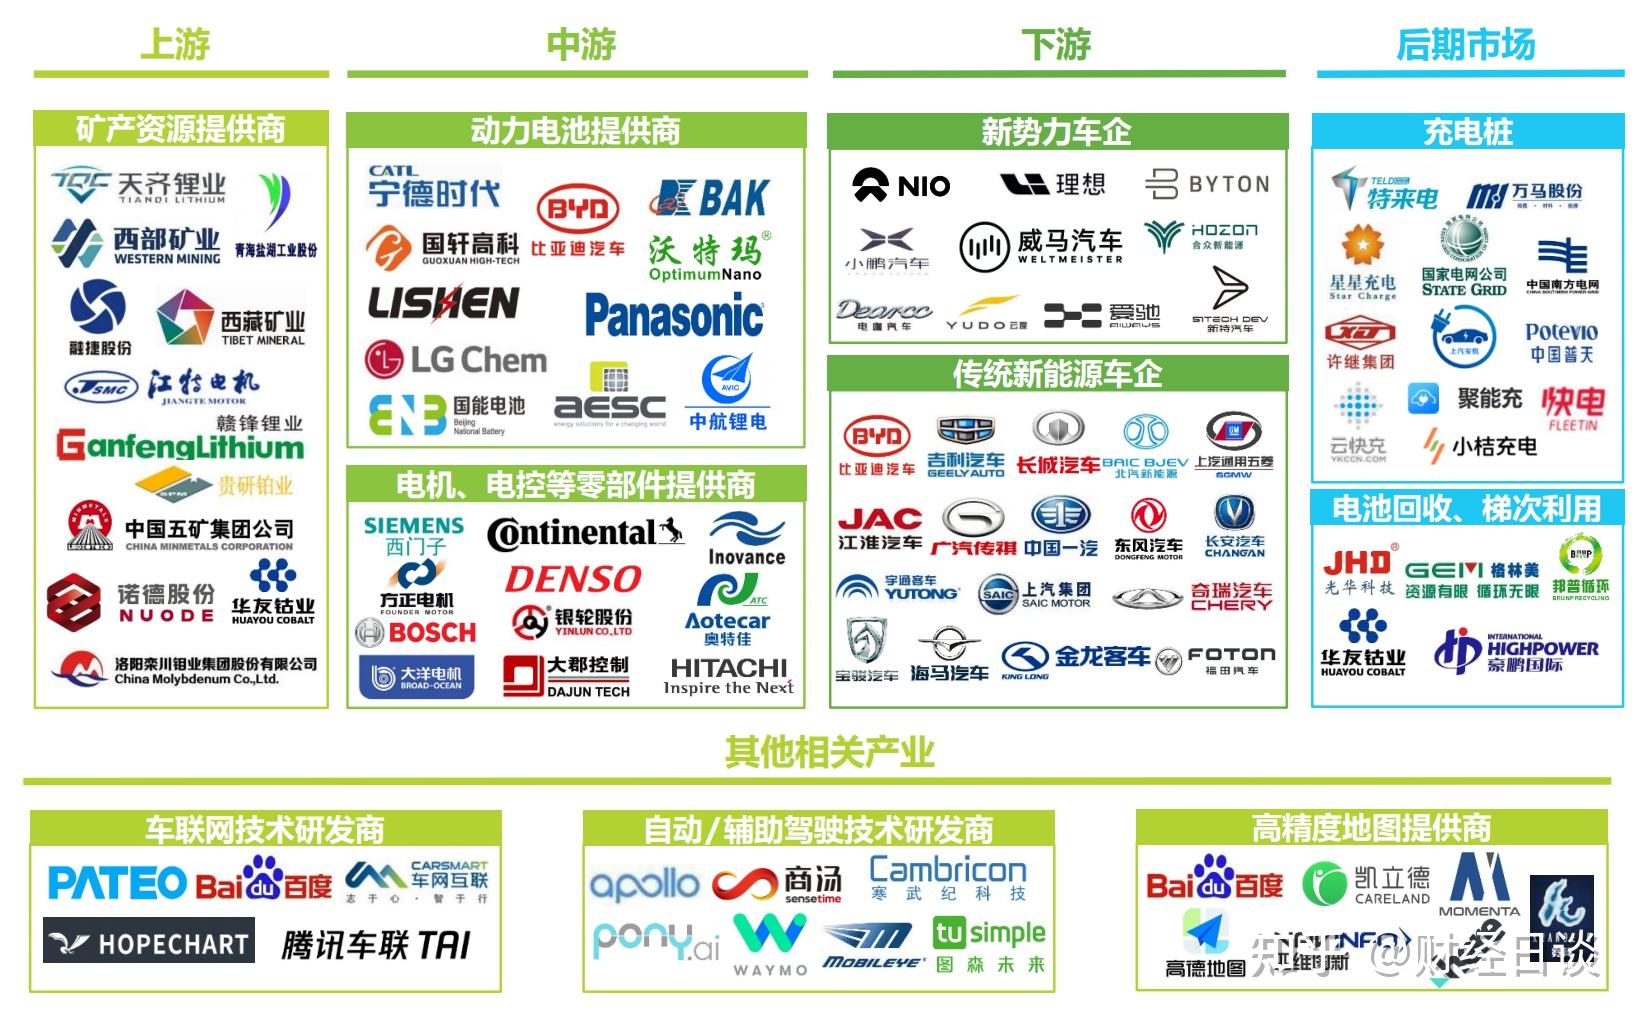 中国新能源汽车产业生态图谱2016 - 易观